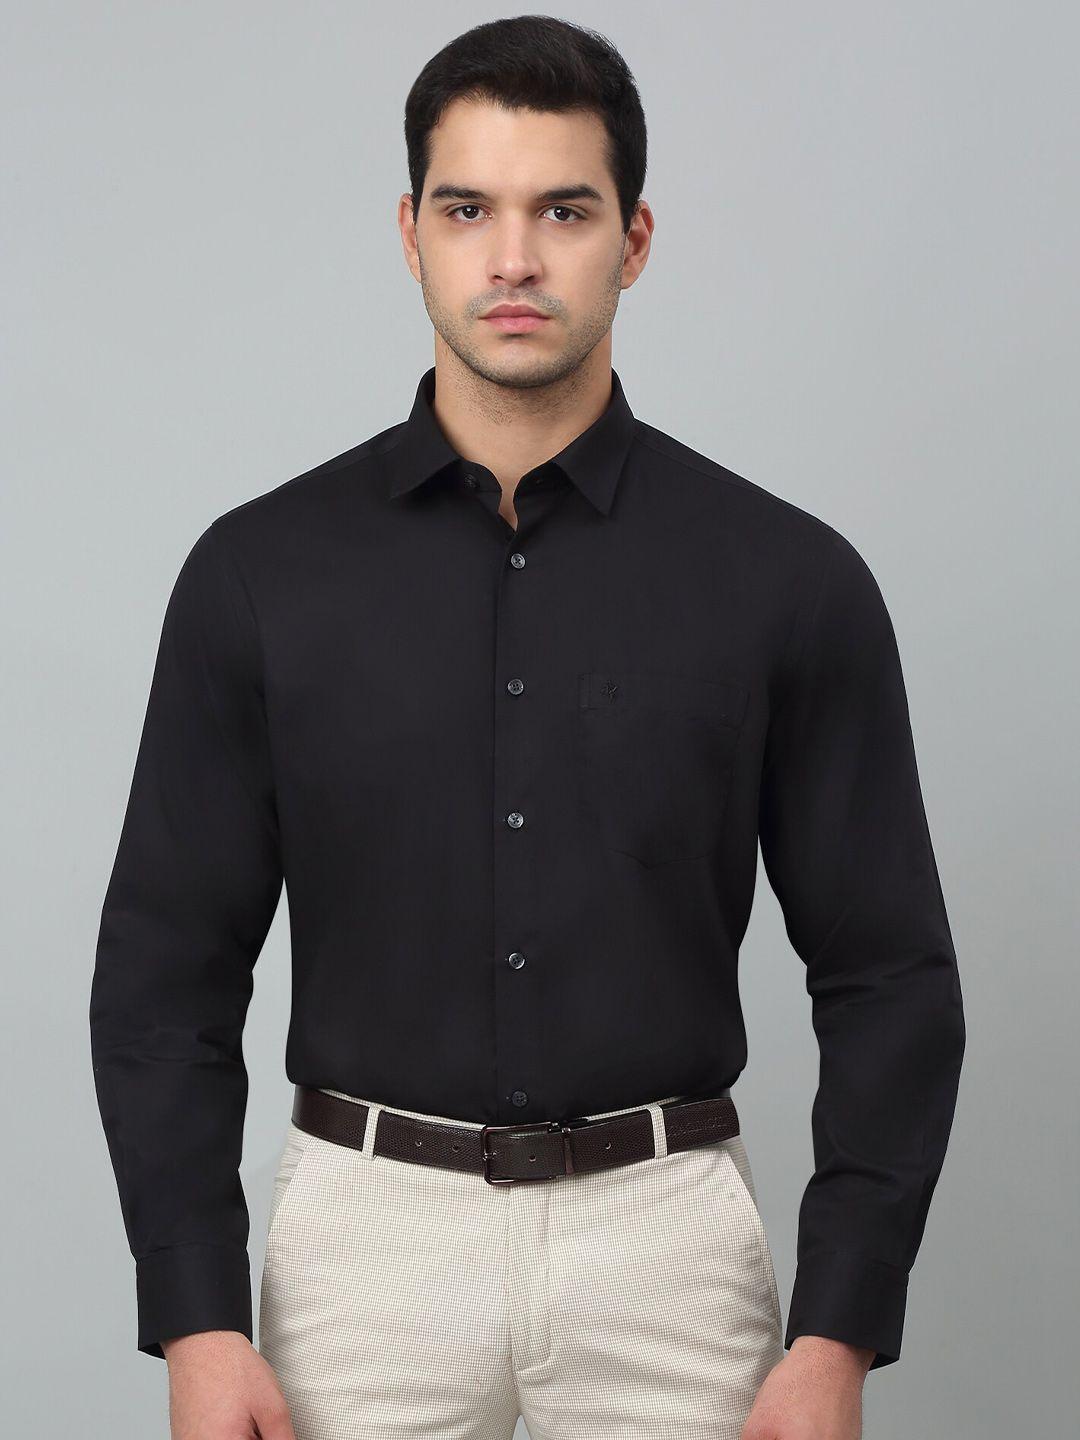 cantabil comfort regular fit spread collar long sleeves formal shirt